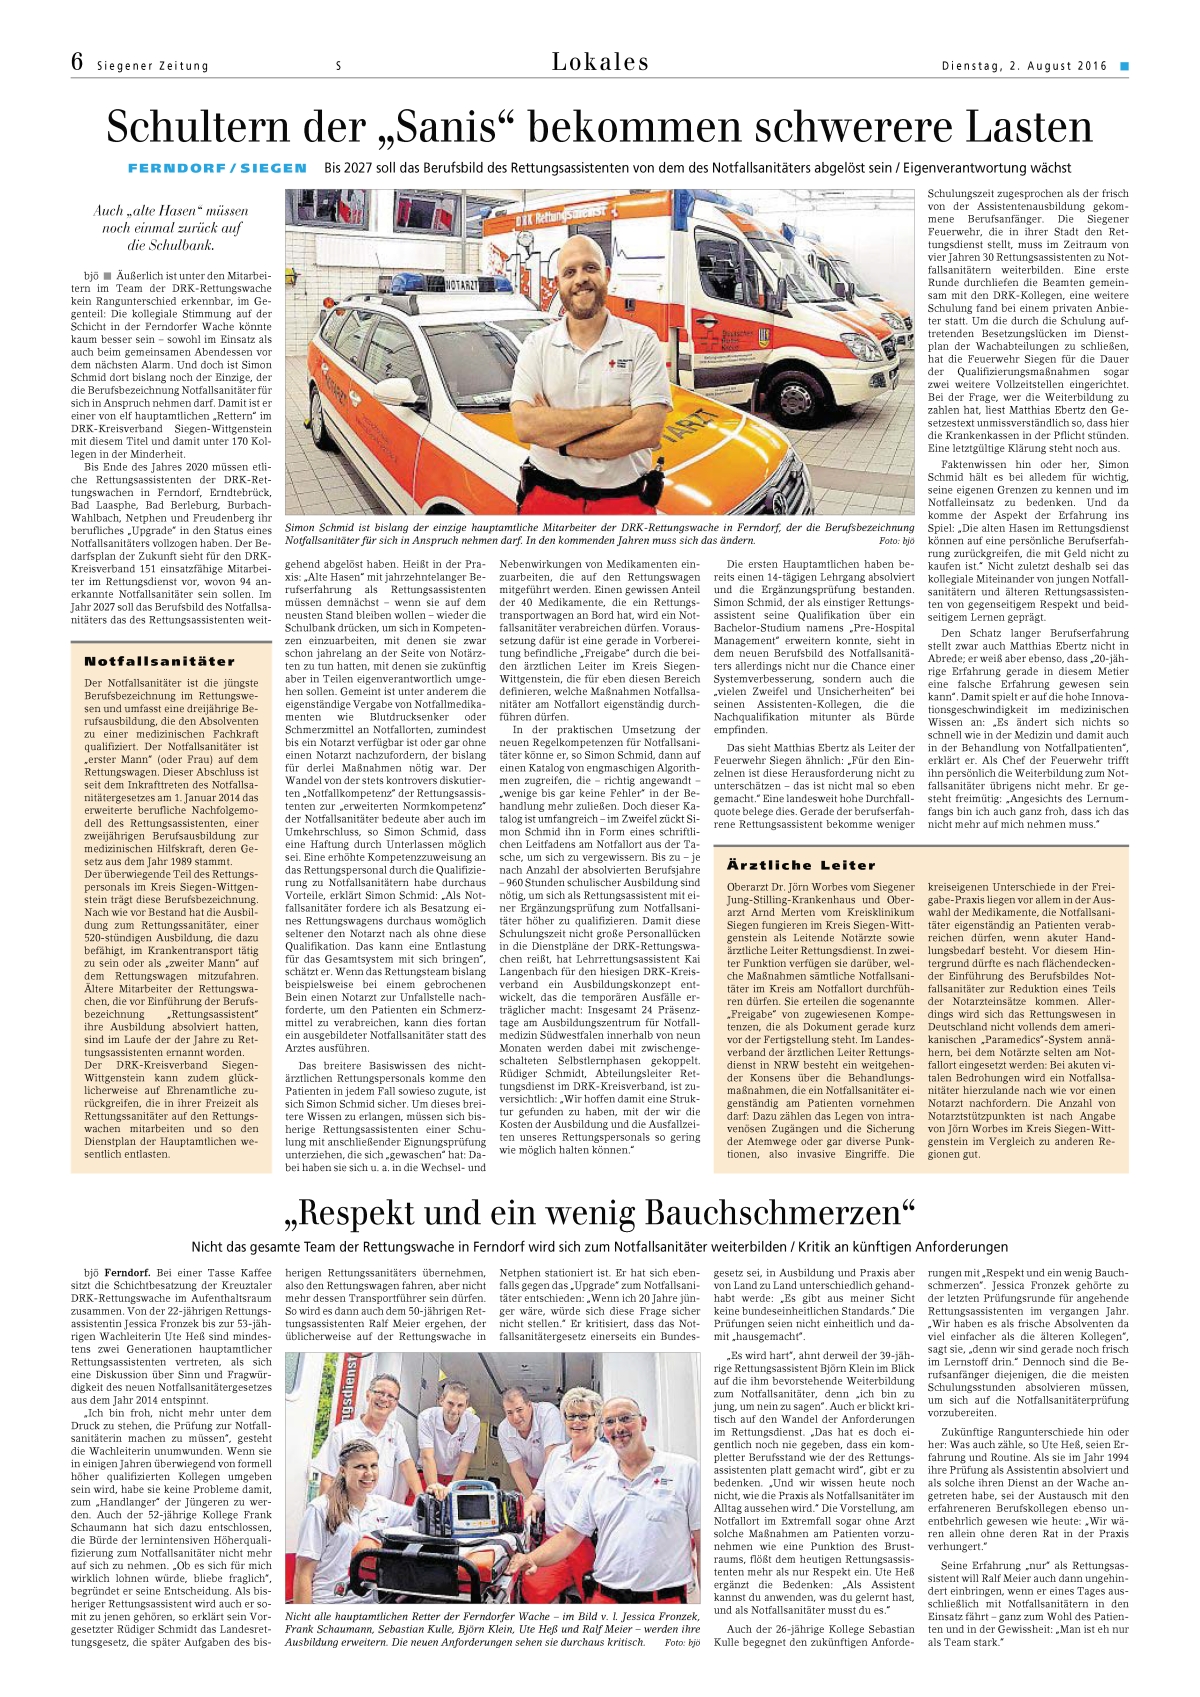 Bericht der Siegener-Zeitung vom 2.8.2016